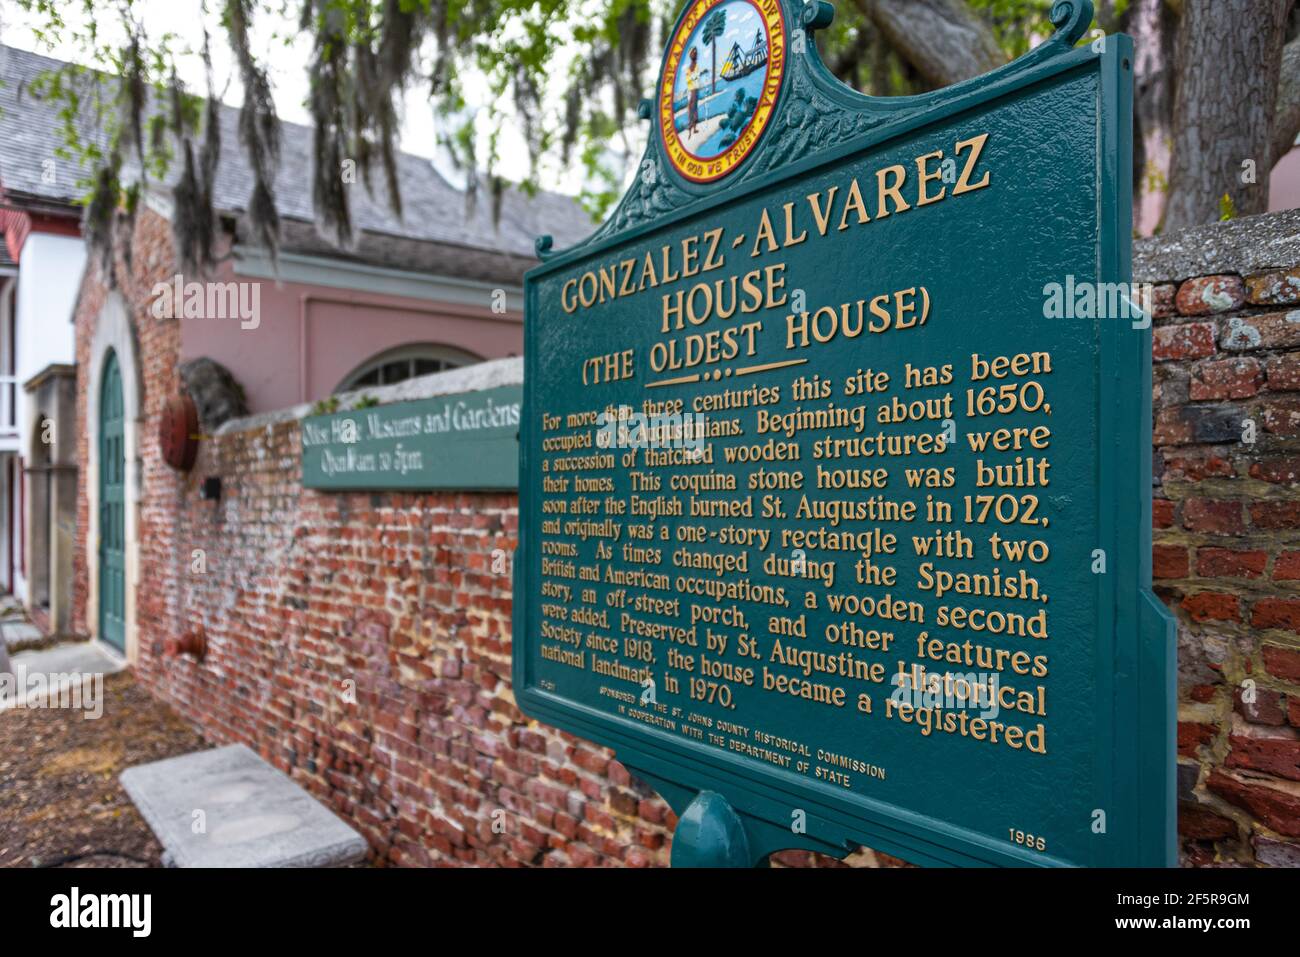 Das Gonzalez-Alverez-Haus (das älteste Haus) ist ein historisches Wahrzeichen in St. Augustine, FL, mit Originalkonstruktion aus dem Jahr 1723. (USA) Stockfoto